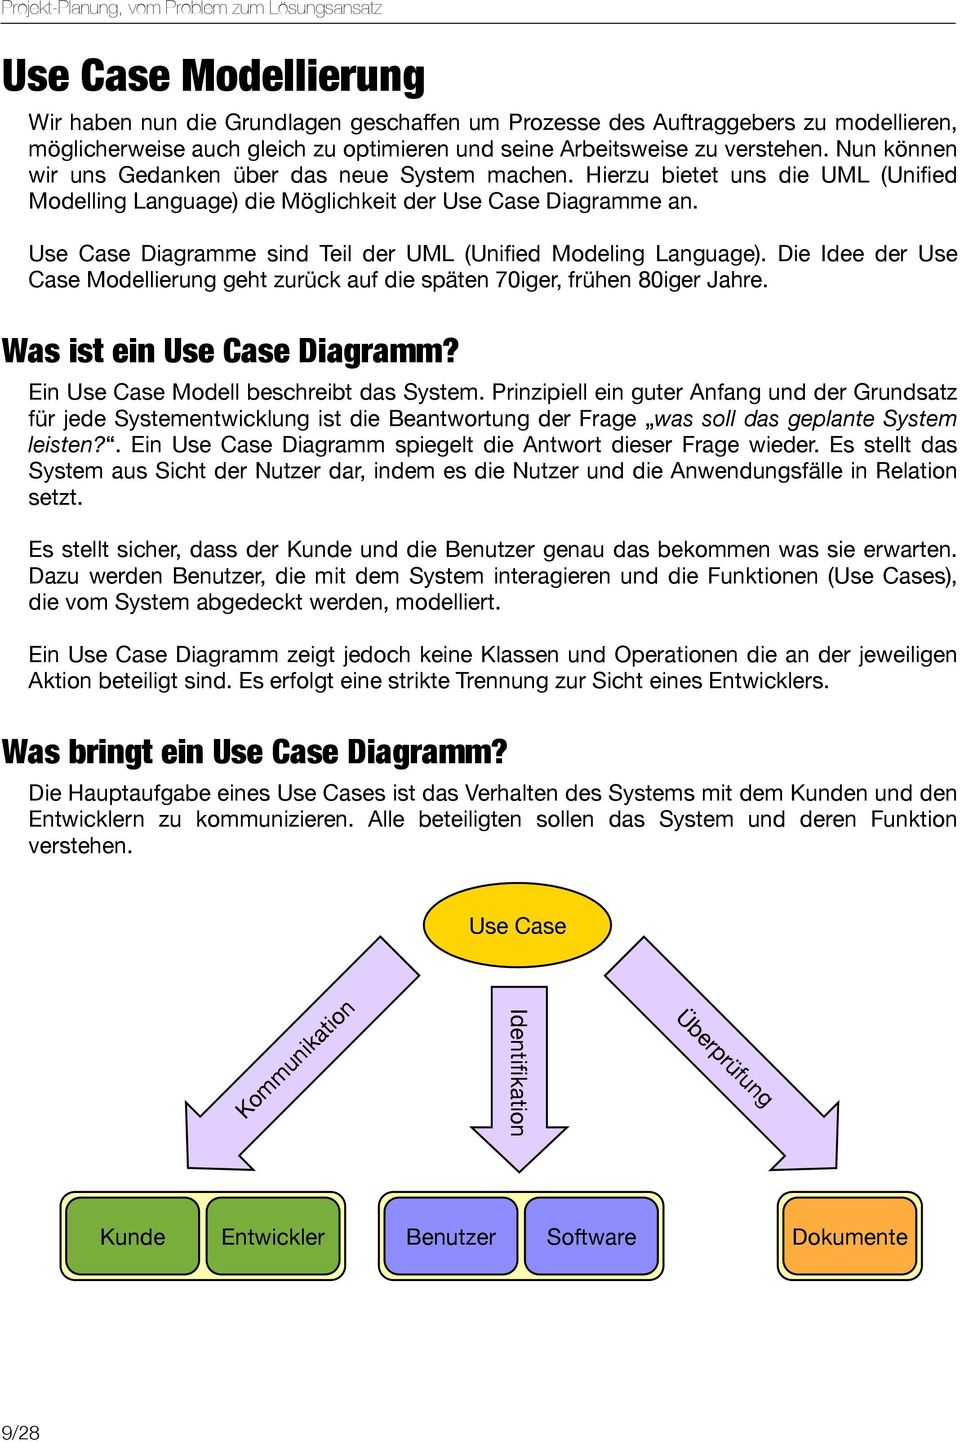 Use Case Diagramme sind Teil der UML (Unified Modeling Language). Die Idee der Use Case Modellierung geht zurück auf die späten 70iger, frühen 80iger Jahre. Was ist ein Use Case Diagramm?